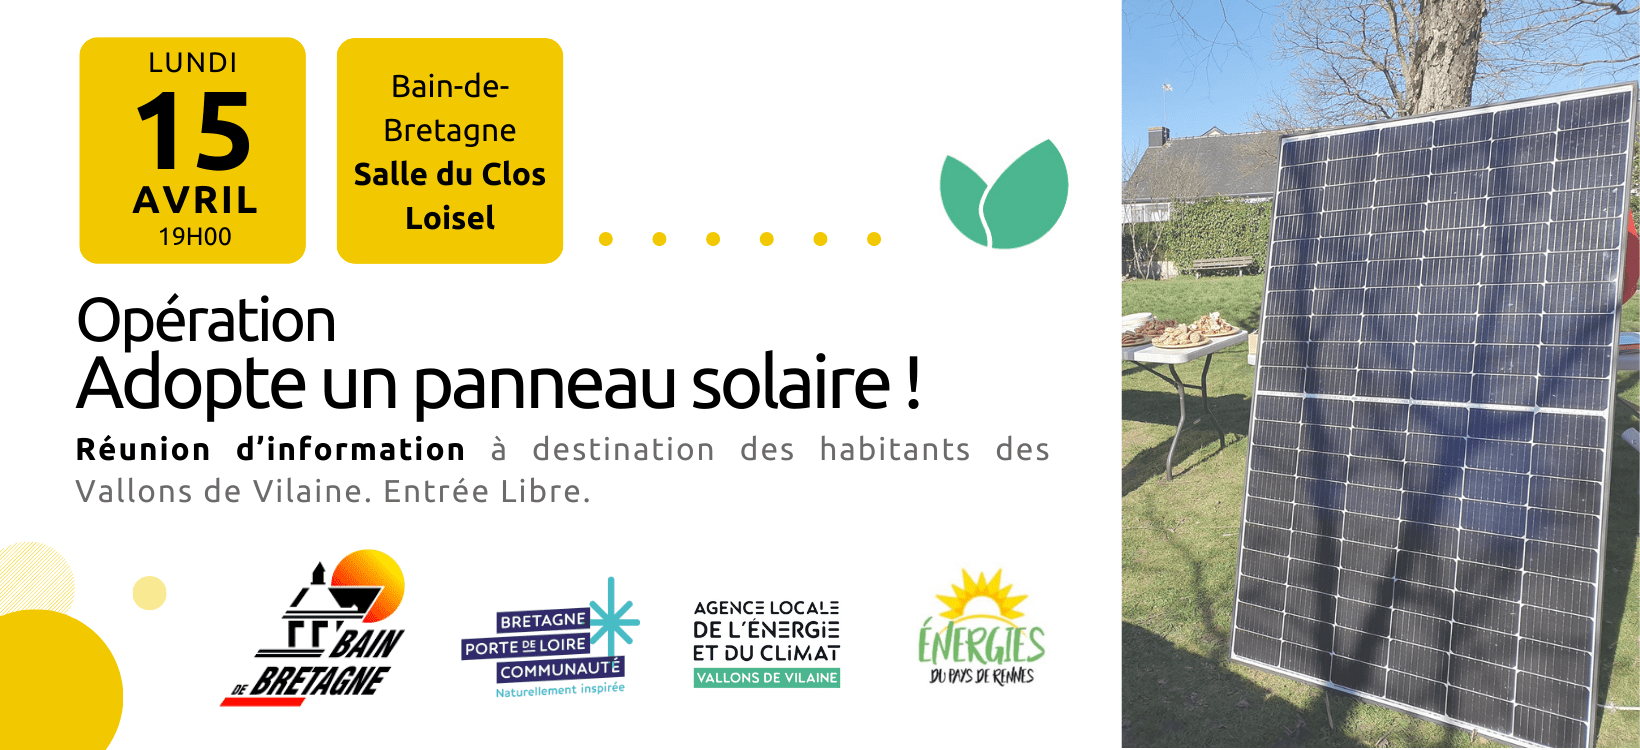 Opération « Adopte un panneau solaire » à Bain-de-Bretagne